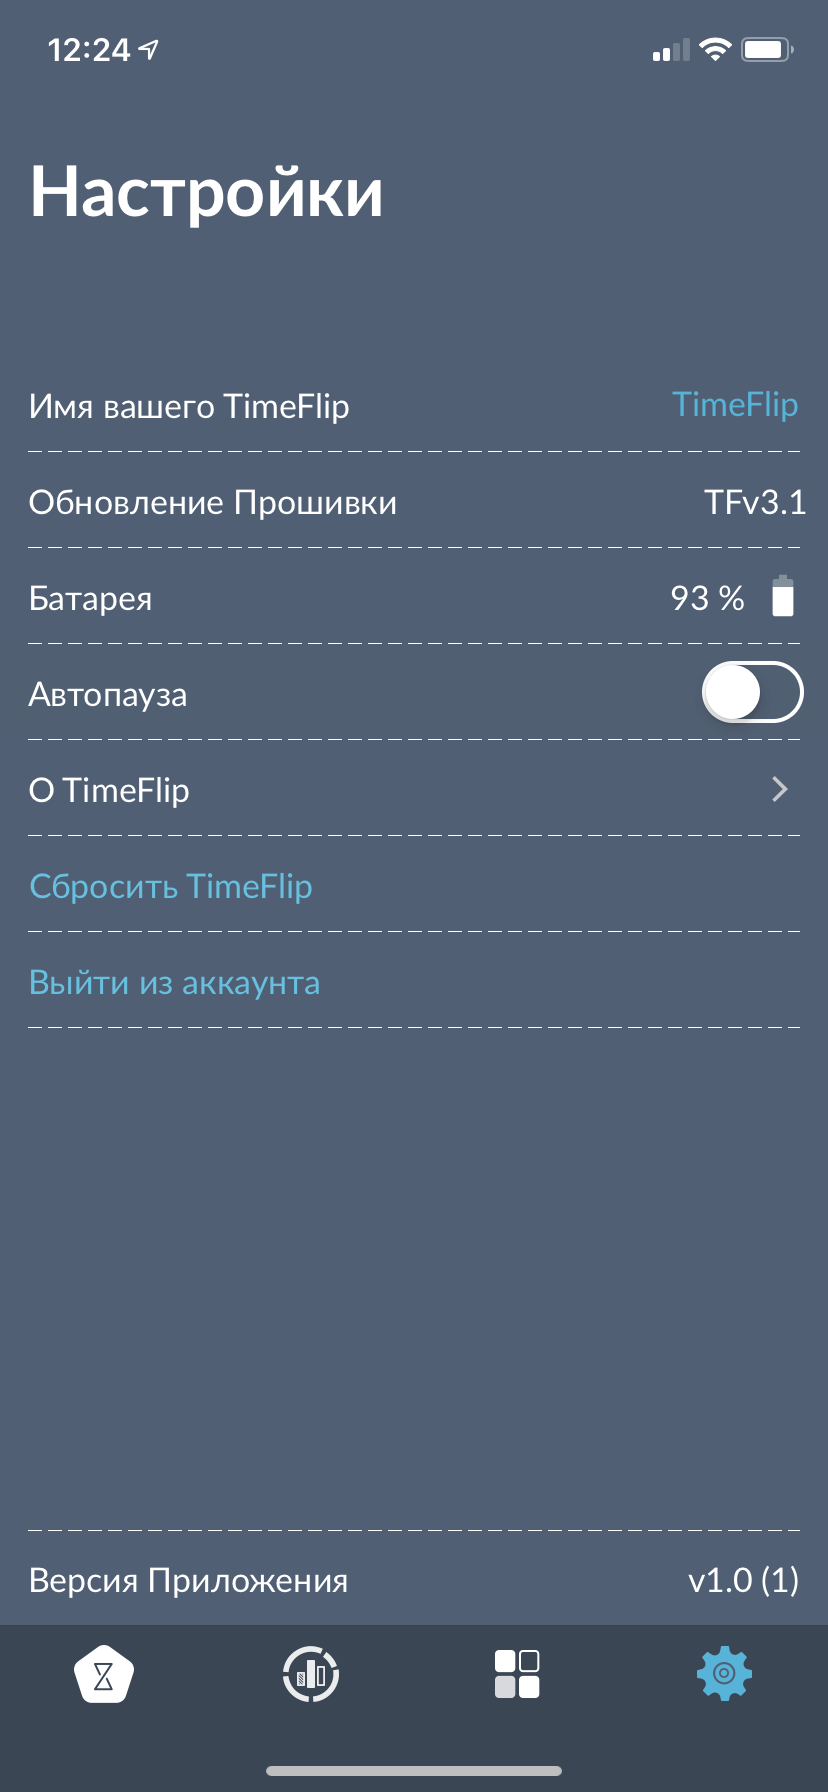 TimeFlip — умный кубик, который научит вас планировать свое время. Как начать пользоваться. Фото.